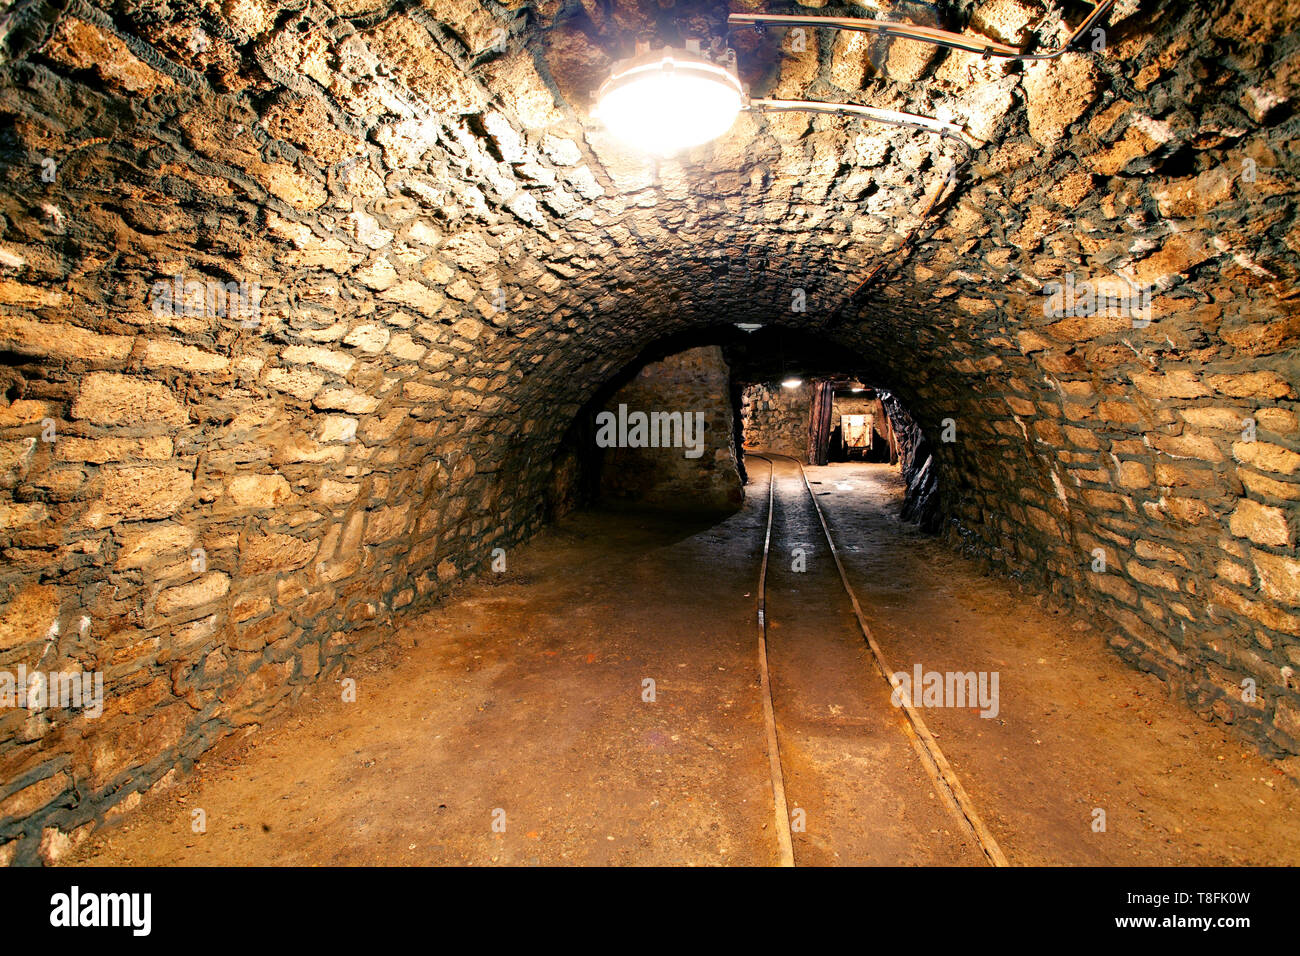 Underground mine tunnel, mining industry Stock Photo